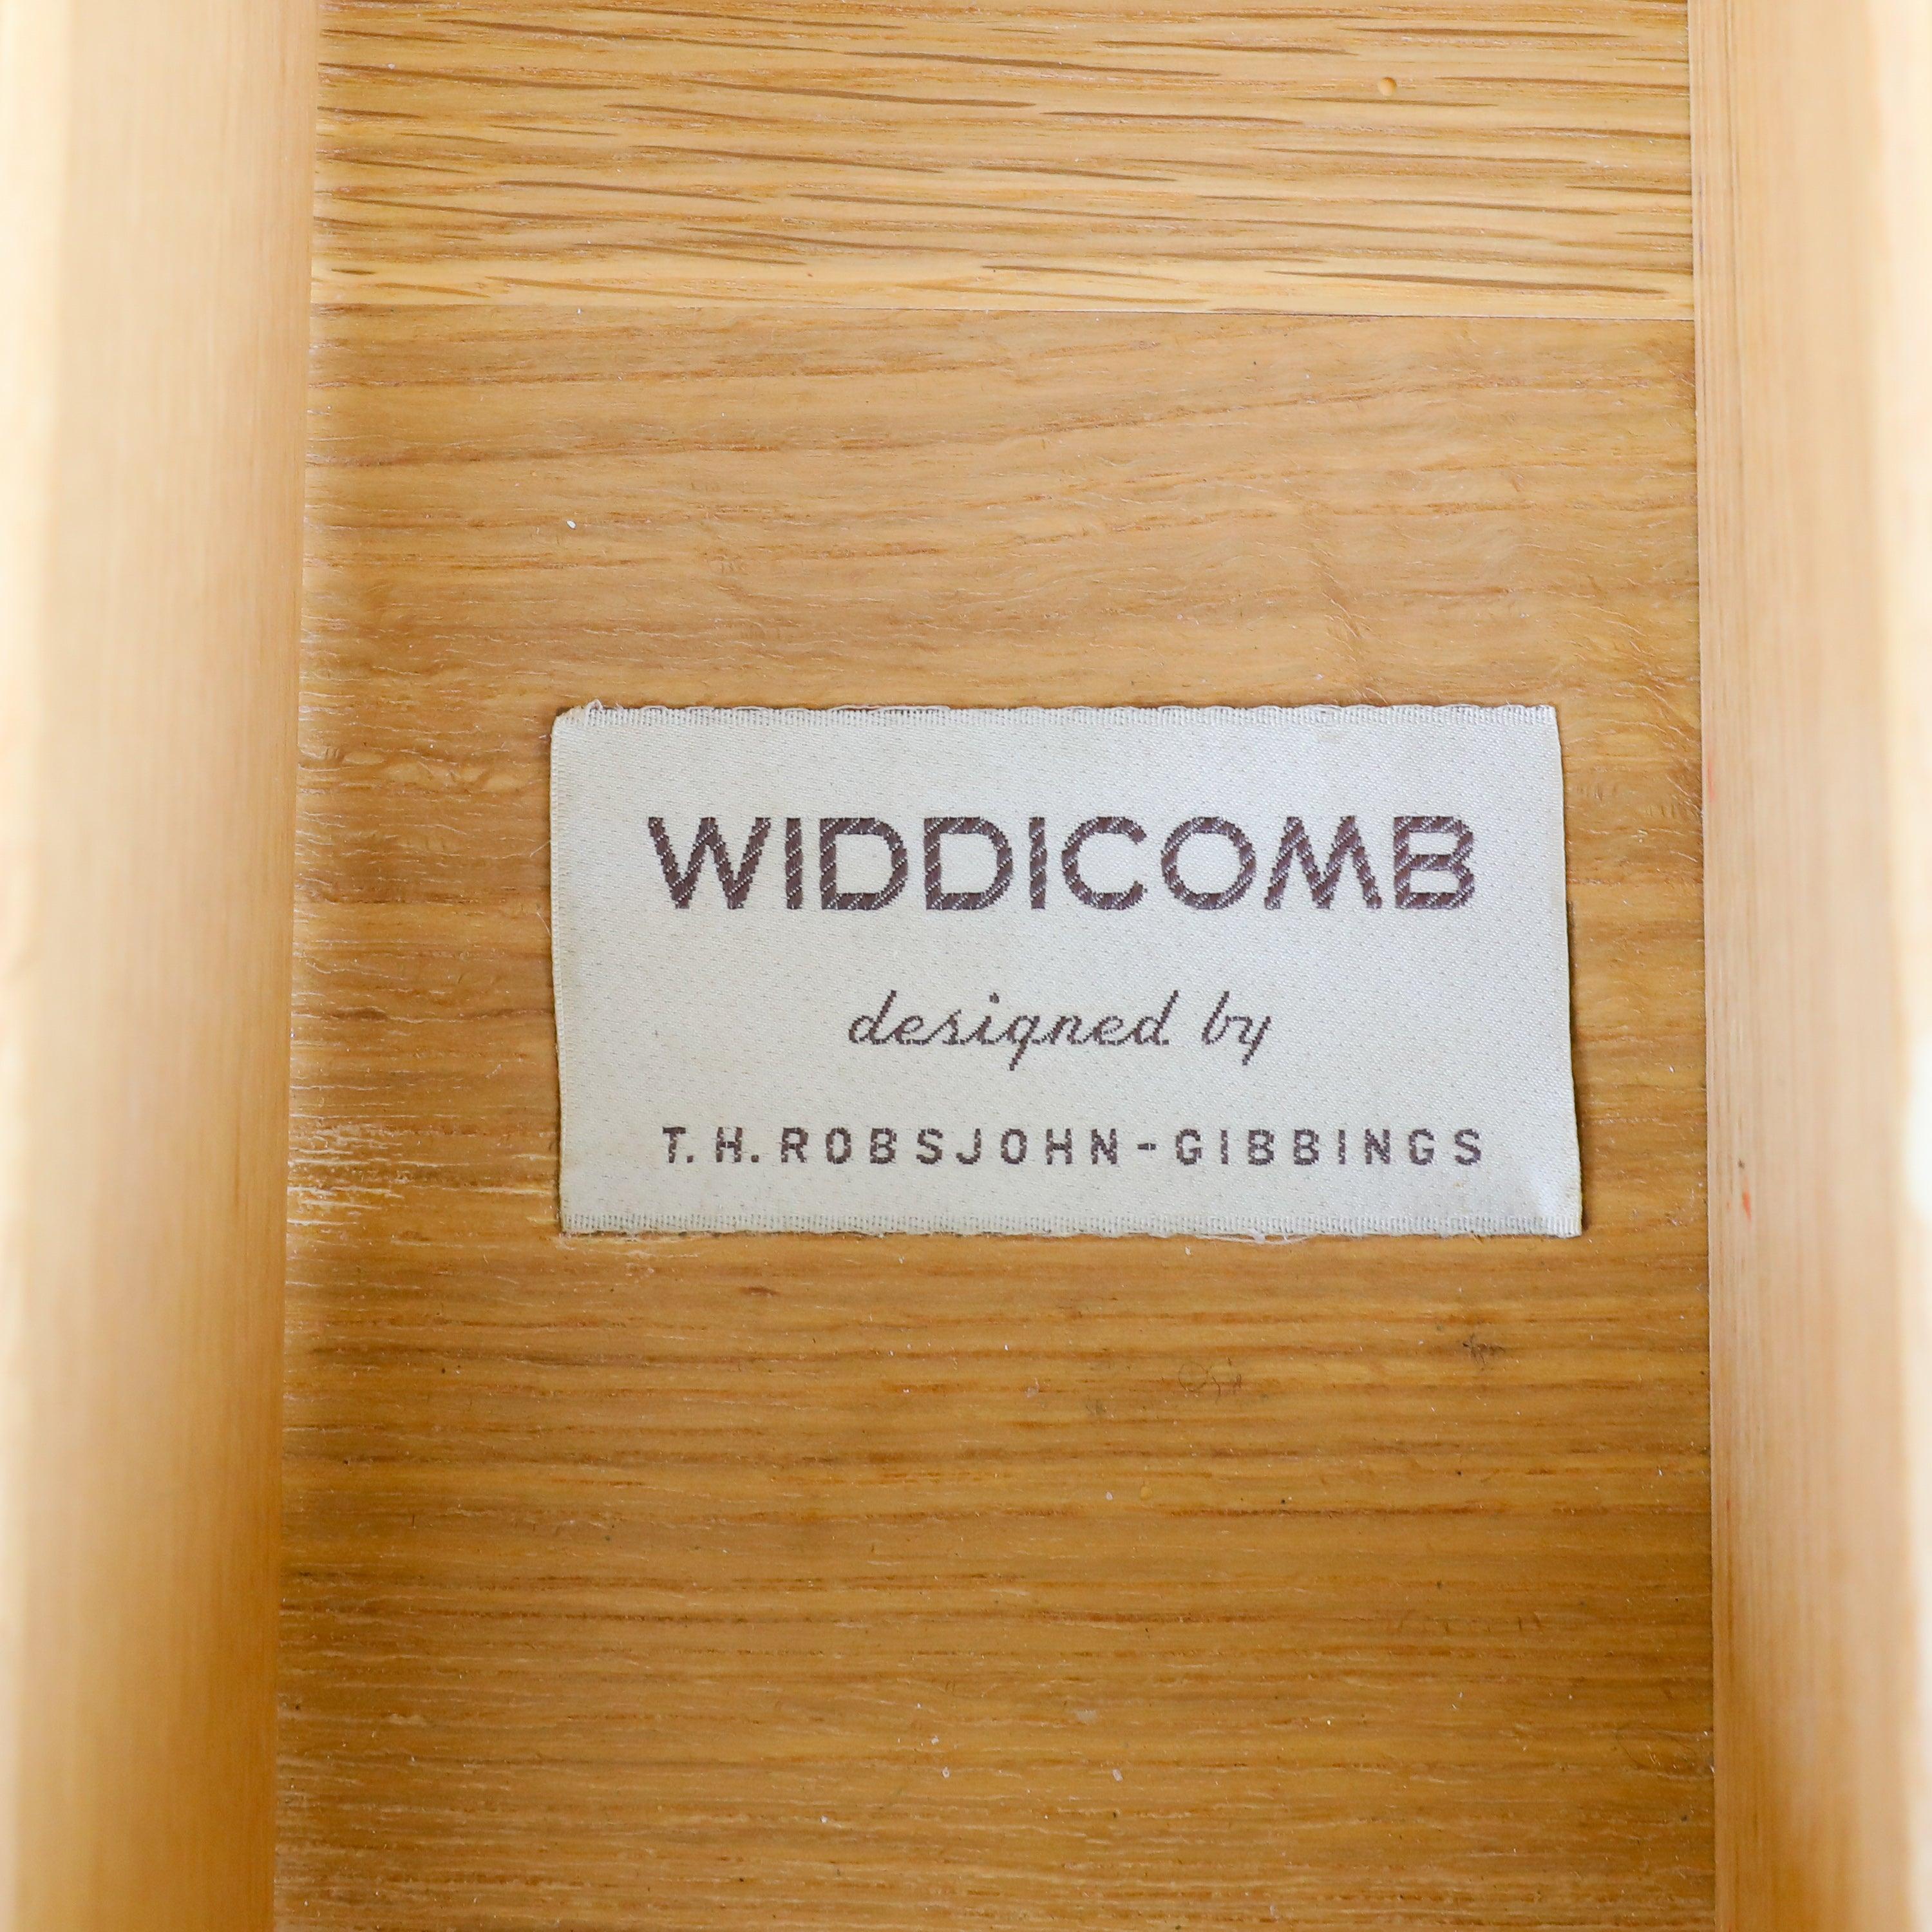 Caning T.H. Robsjohn-Gibbings Dresser for Widdicomb